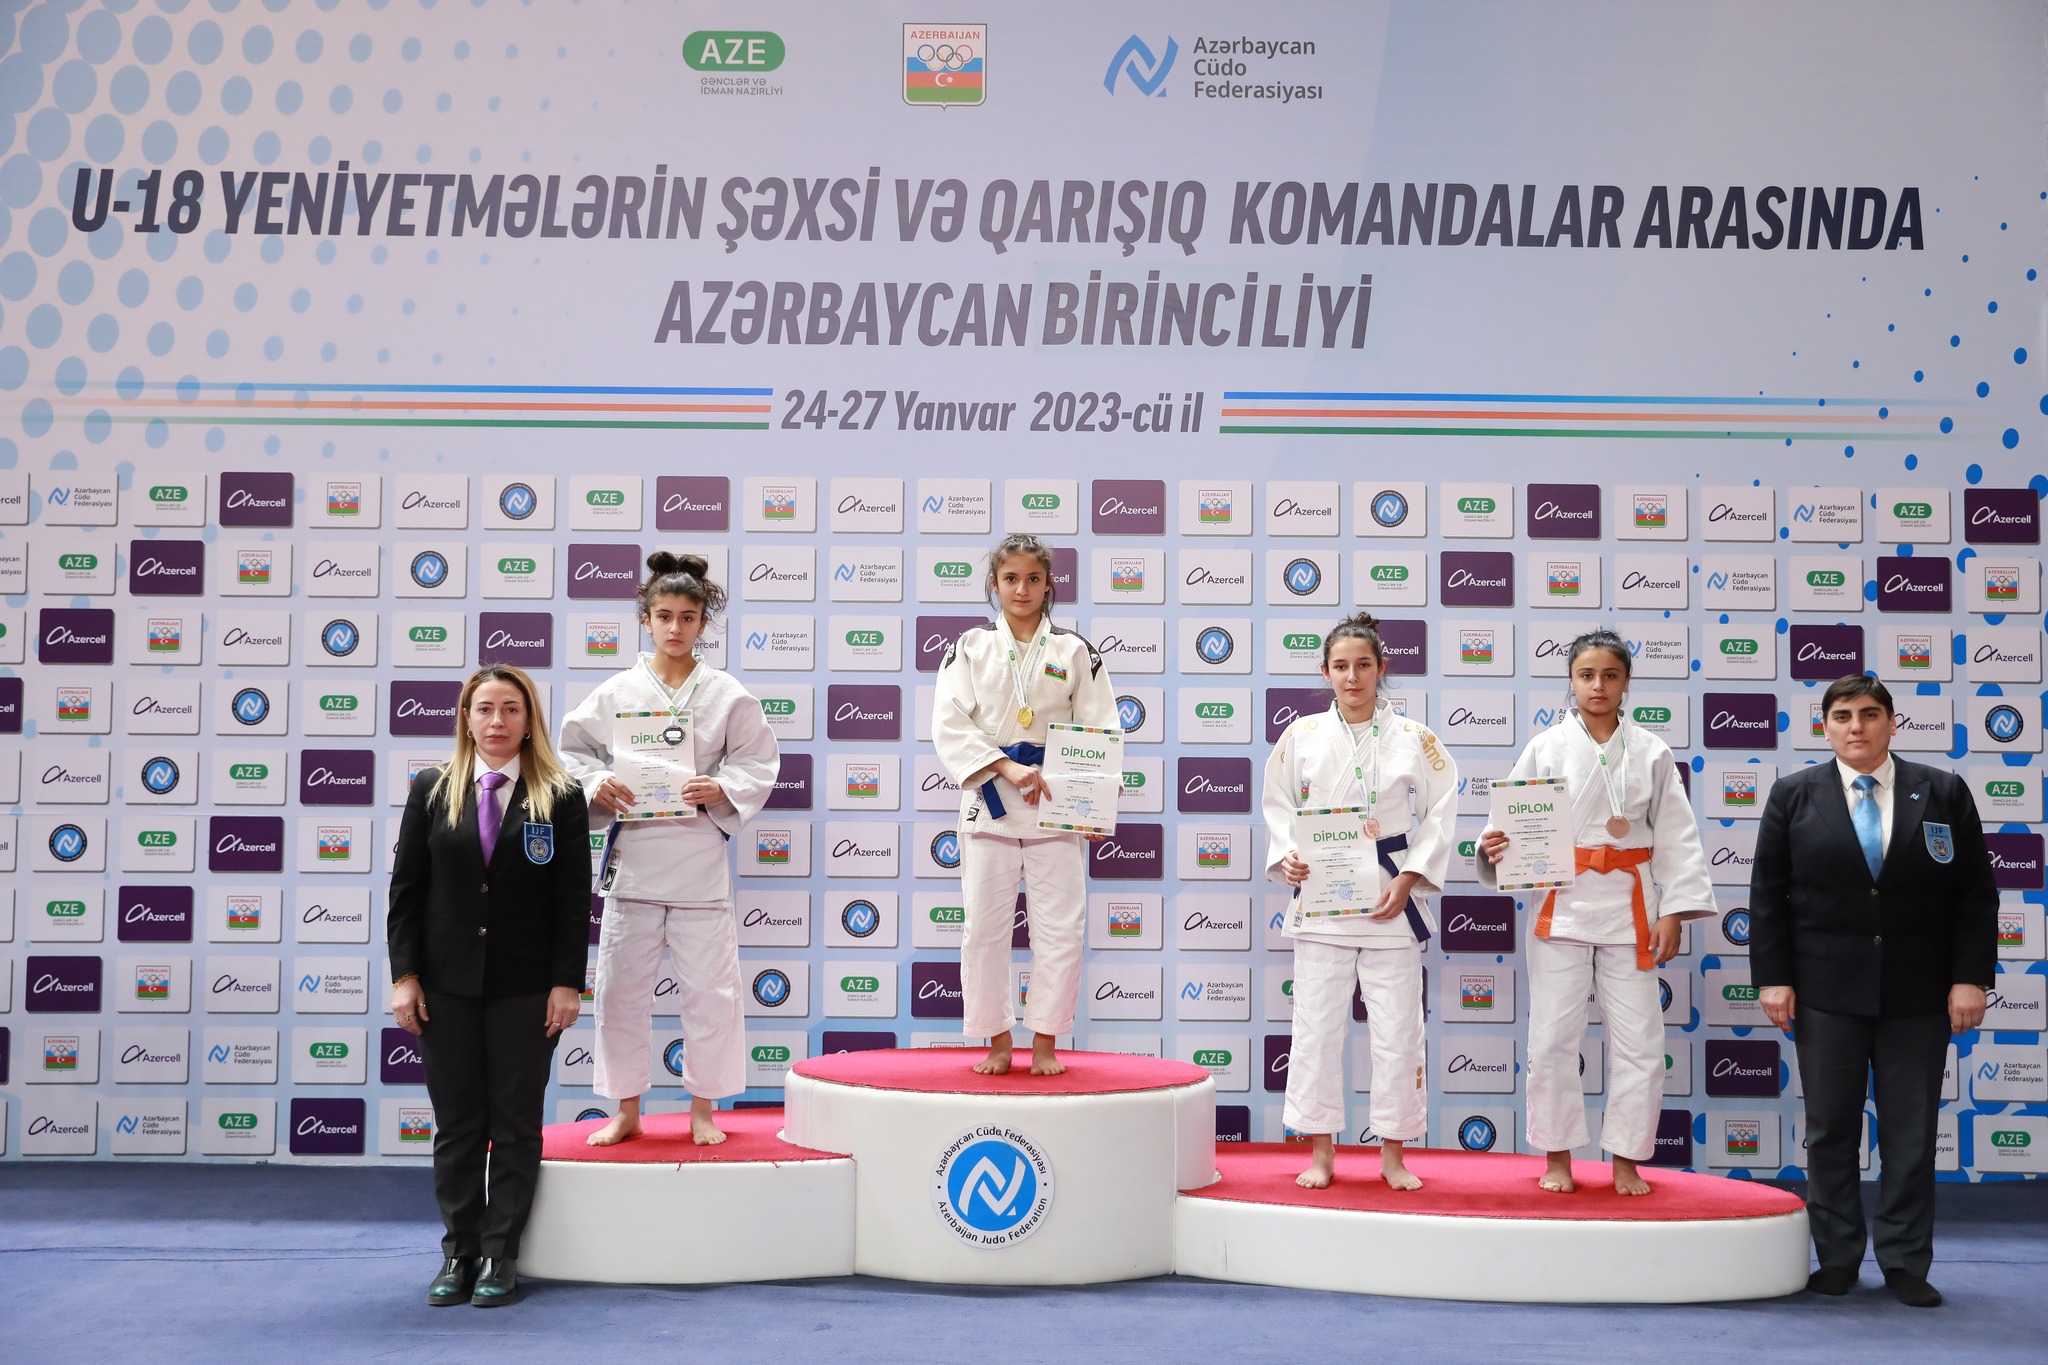 img/posts/judo-club-2012nin-yetirmeleri-azerbaycan-birinciliyini-2-burunc-medalla-basa-vurdular-2023-01-28-150528/1.jpg